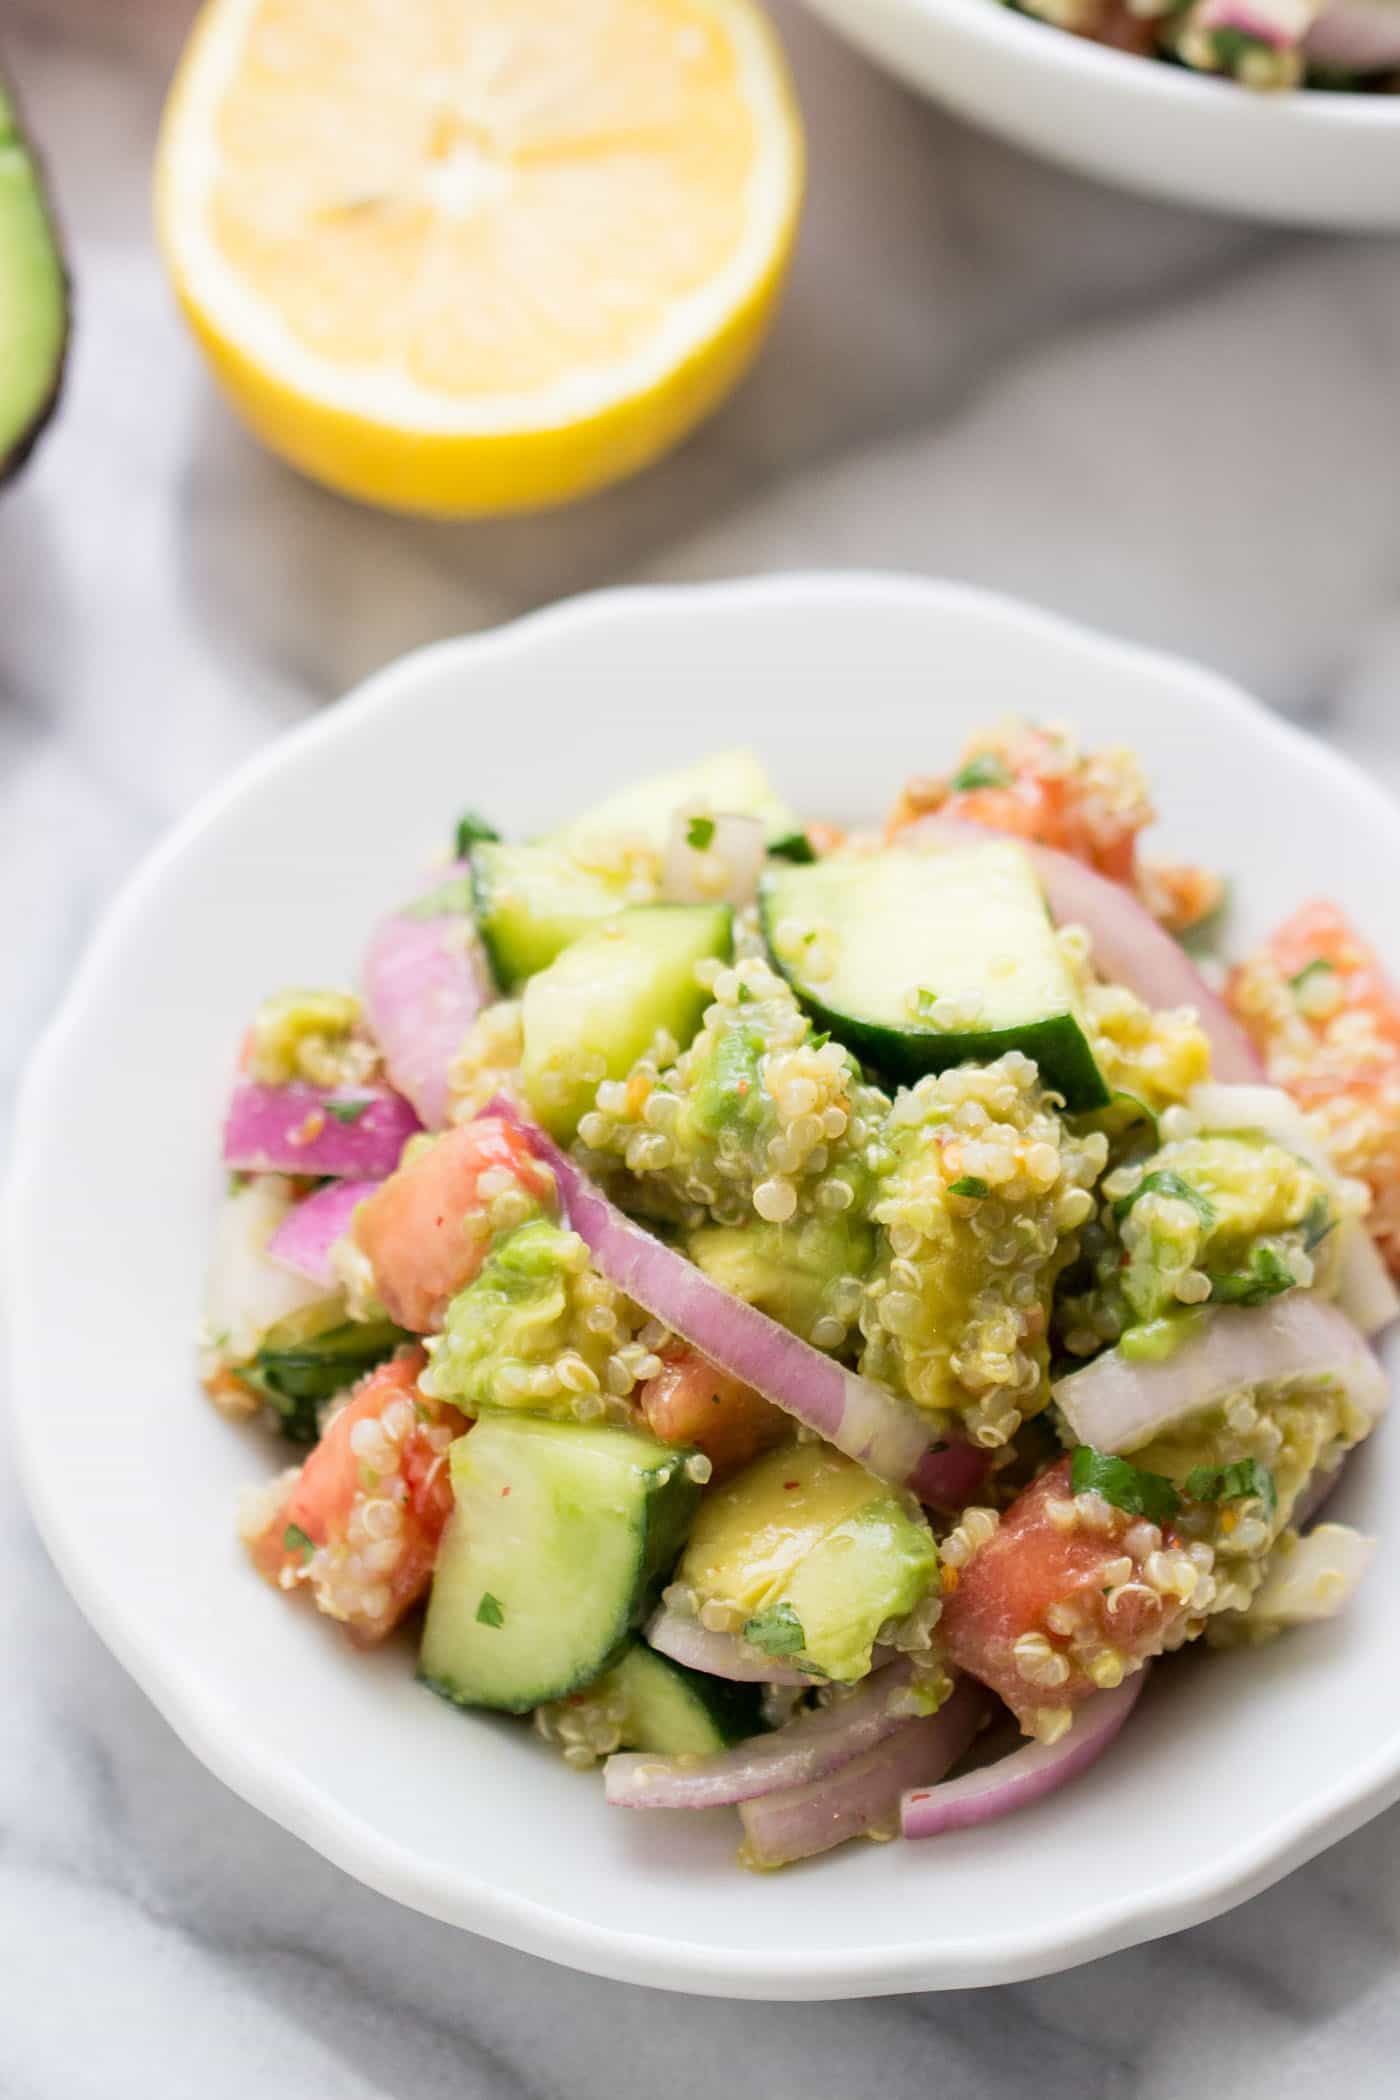  Une simple salade de quinoa à l'avocat avec concombres et tomates perfect parfaite pour le déjeuner ou pour un repas léger d'été!